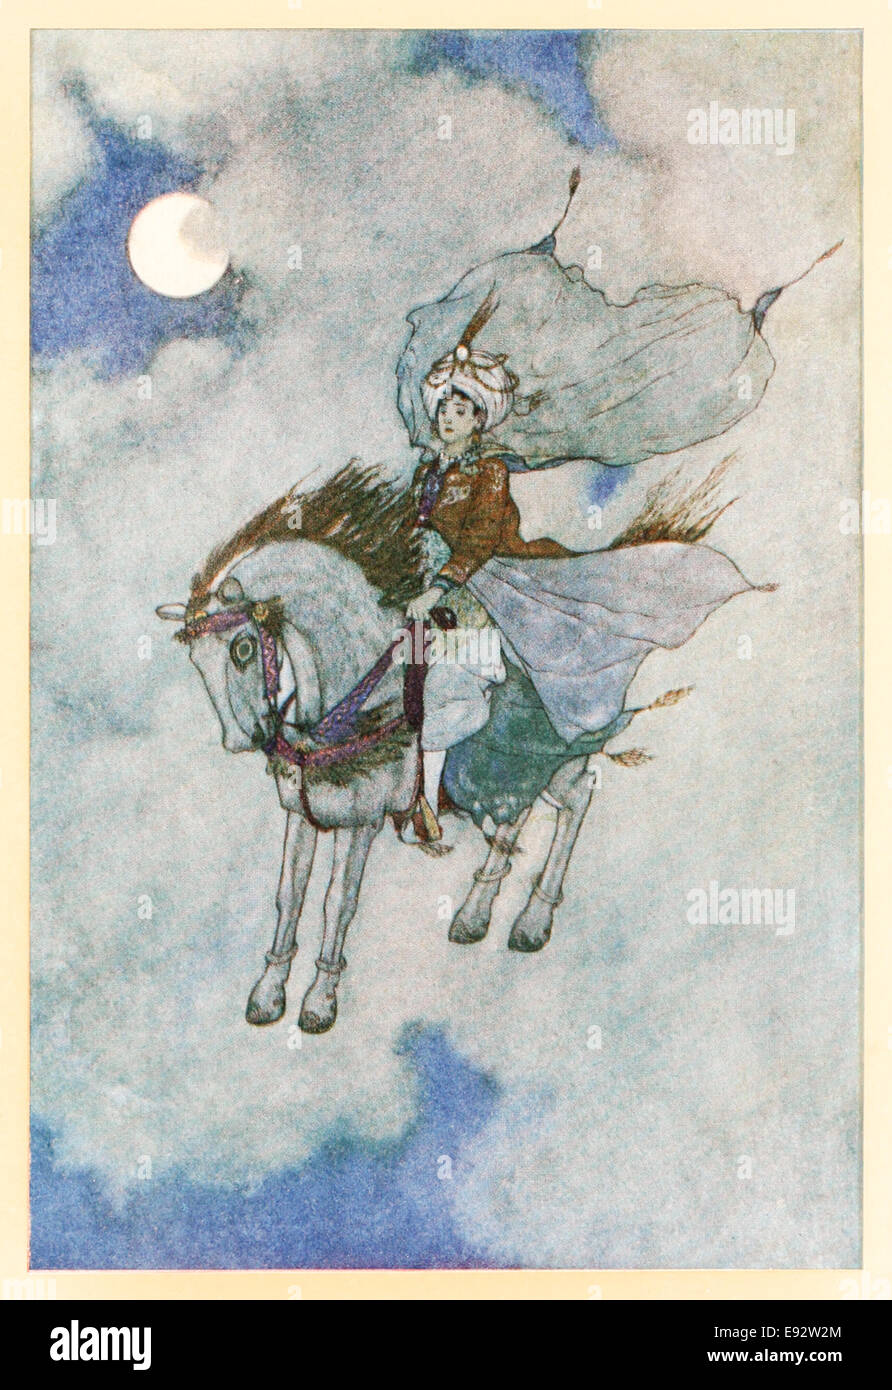 Le cheval magique revient avec le Prince Edmund Dulac - L'illustration de 'l'histoire de l'cheval magique' dans 'Stories de l'Arabian Nights'. Voir la description pour plus d'informations Banque D'Images